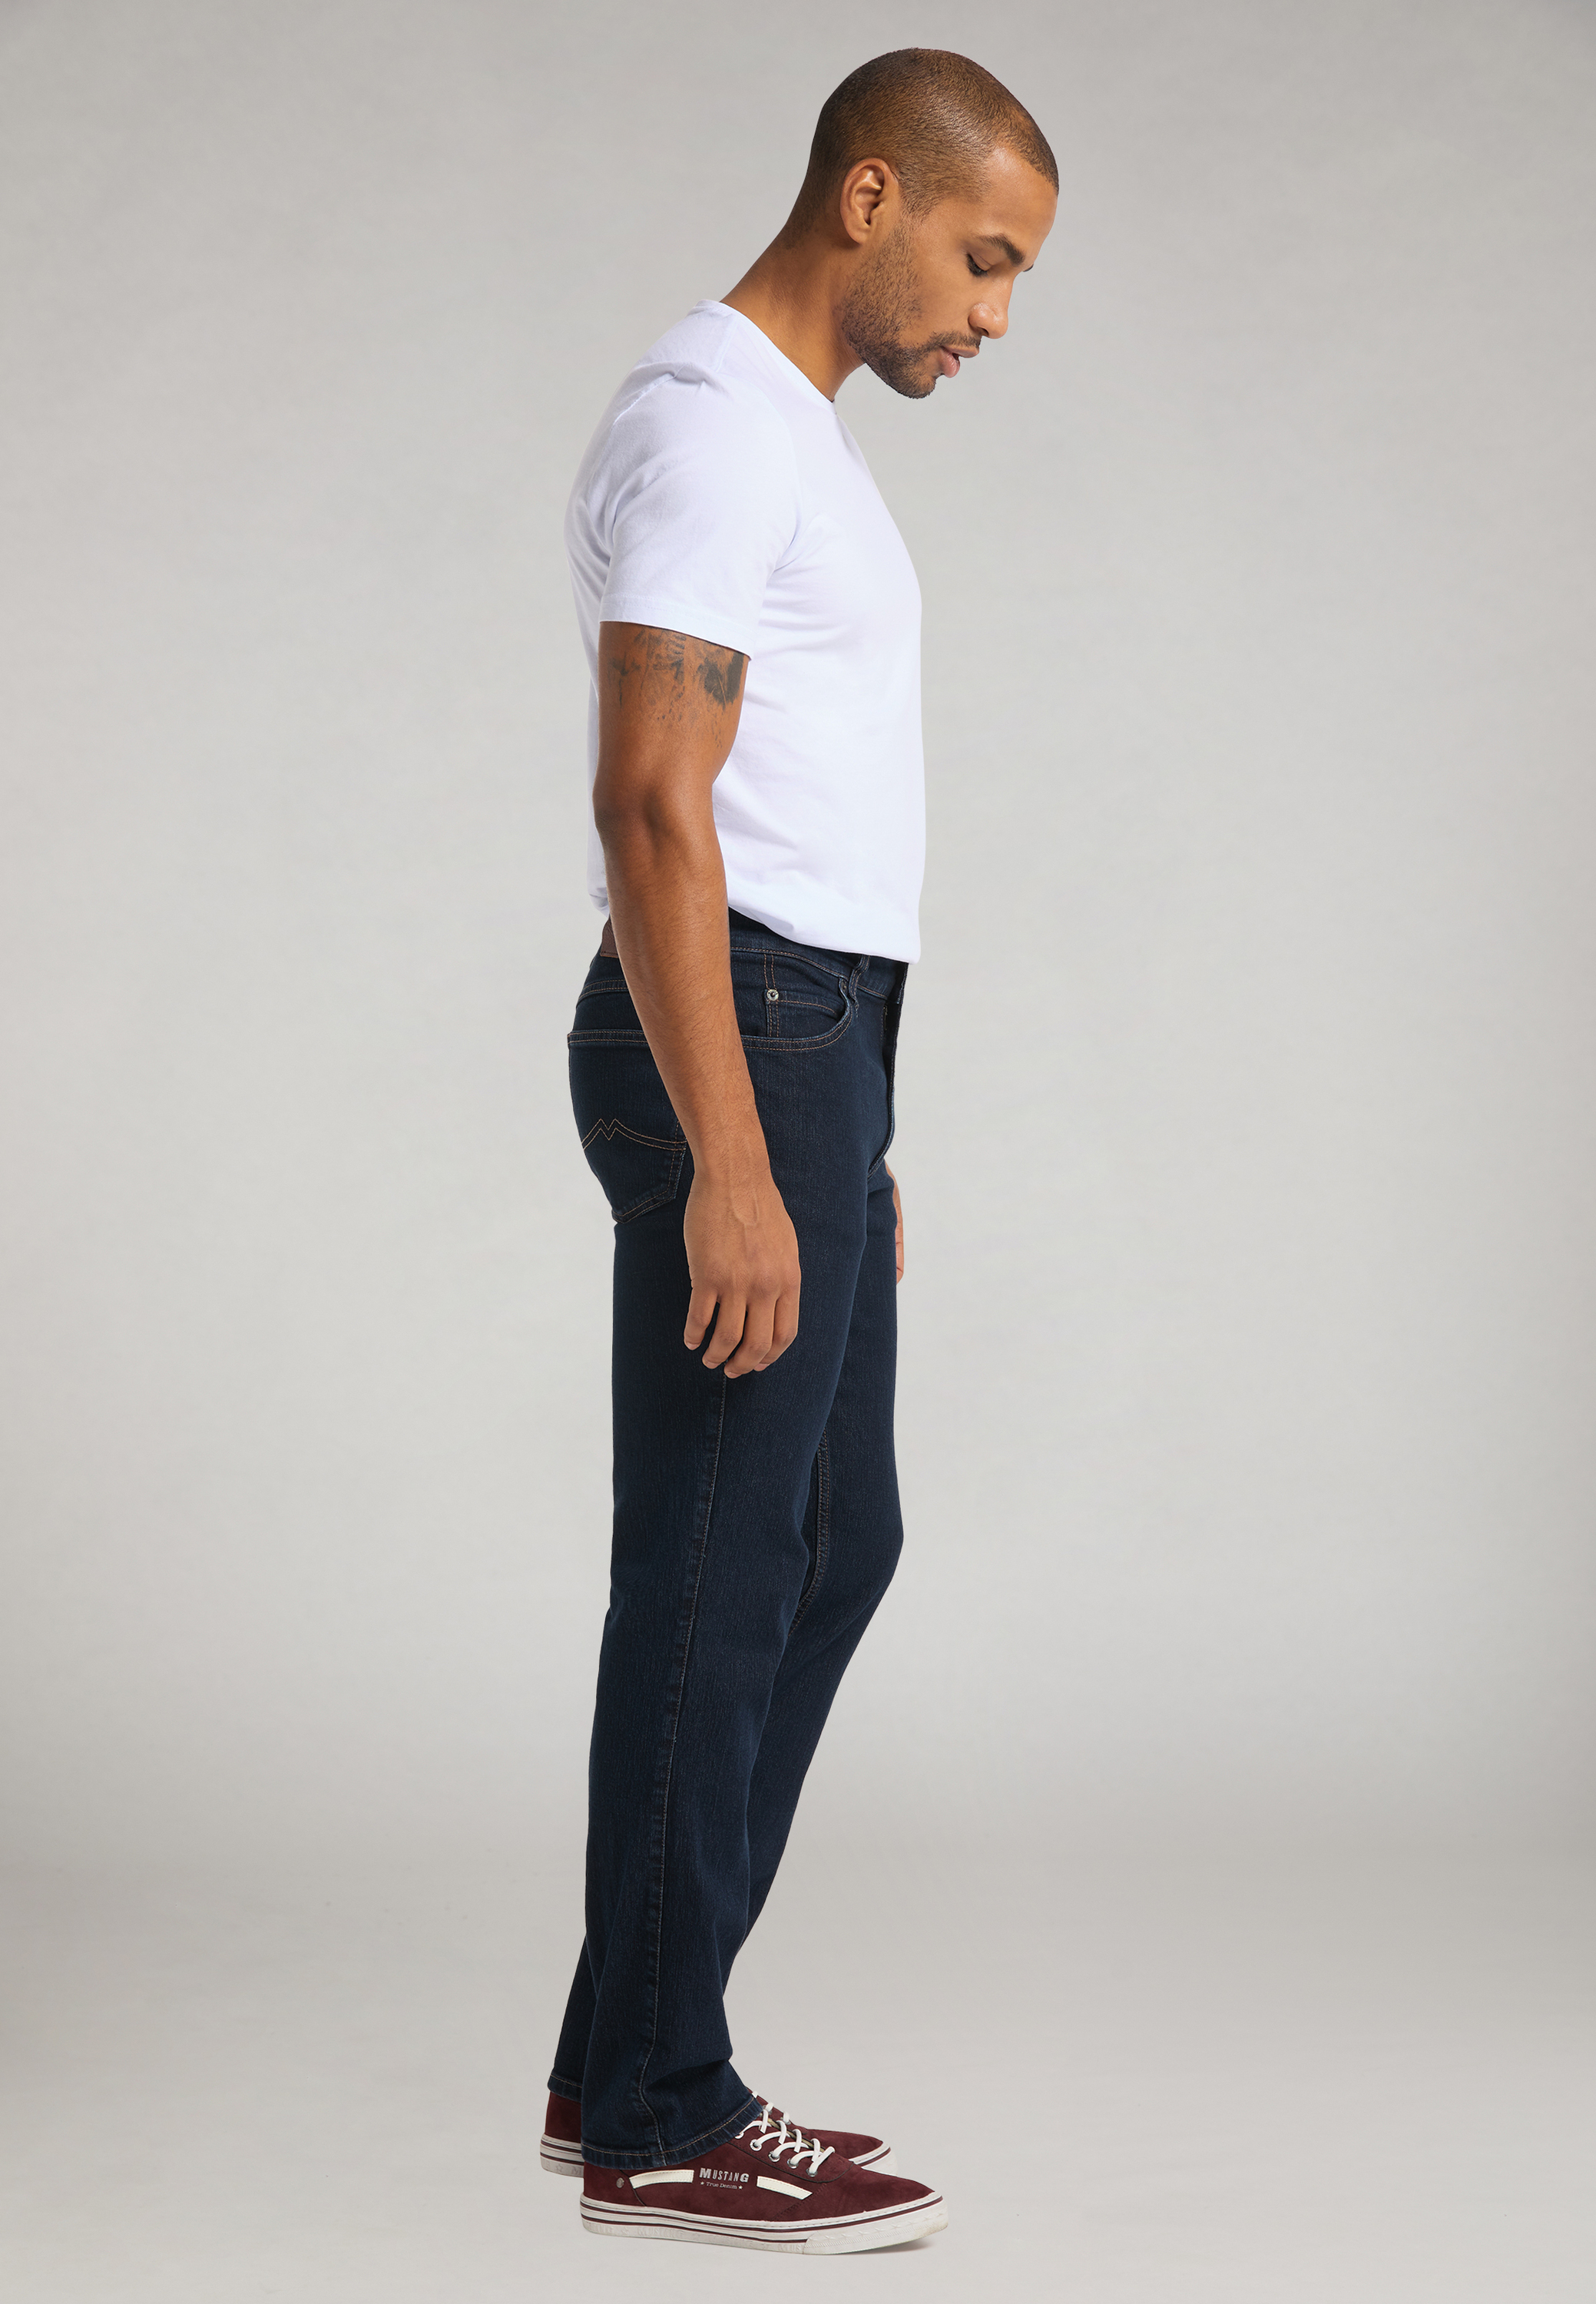 Artikel klicken und genauer betrachten! - Mit den MUSTANG Tramper Jeans hast Du einen zuverlässigen Modepartner für lässige Casual-Outfits. Das ebenmäßige Five-Pocket-Design mit bequemem Bund prägt den Stil der Freizeithose. Unser Tipp: Trage die Denim mit Karohemd und Turnschuh – gemeinsam machen sie Dich bereit für einen entspannten Tag mit komfortablem Styling. | im Online Shop kaufen